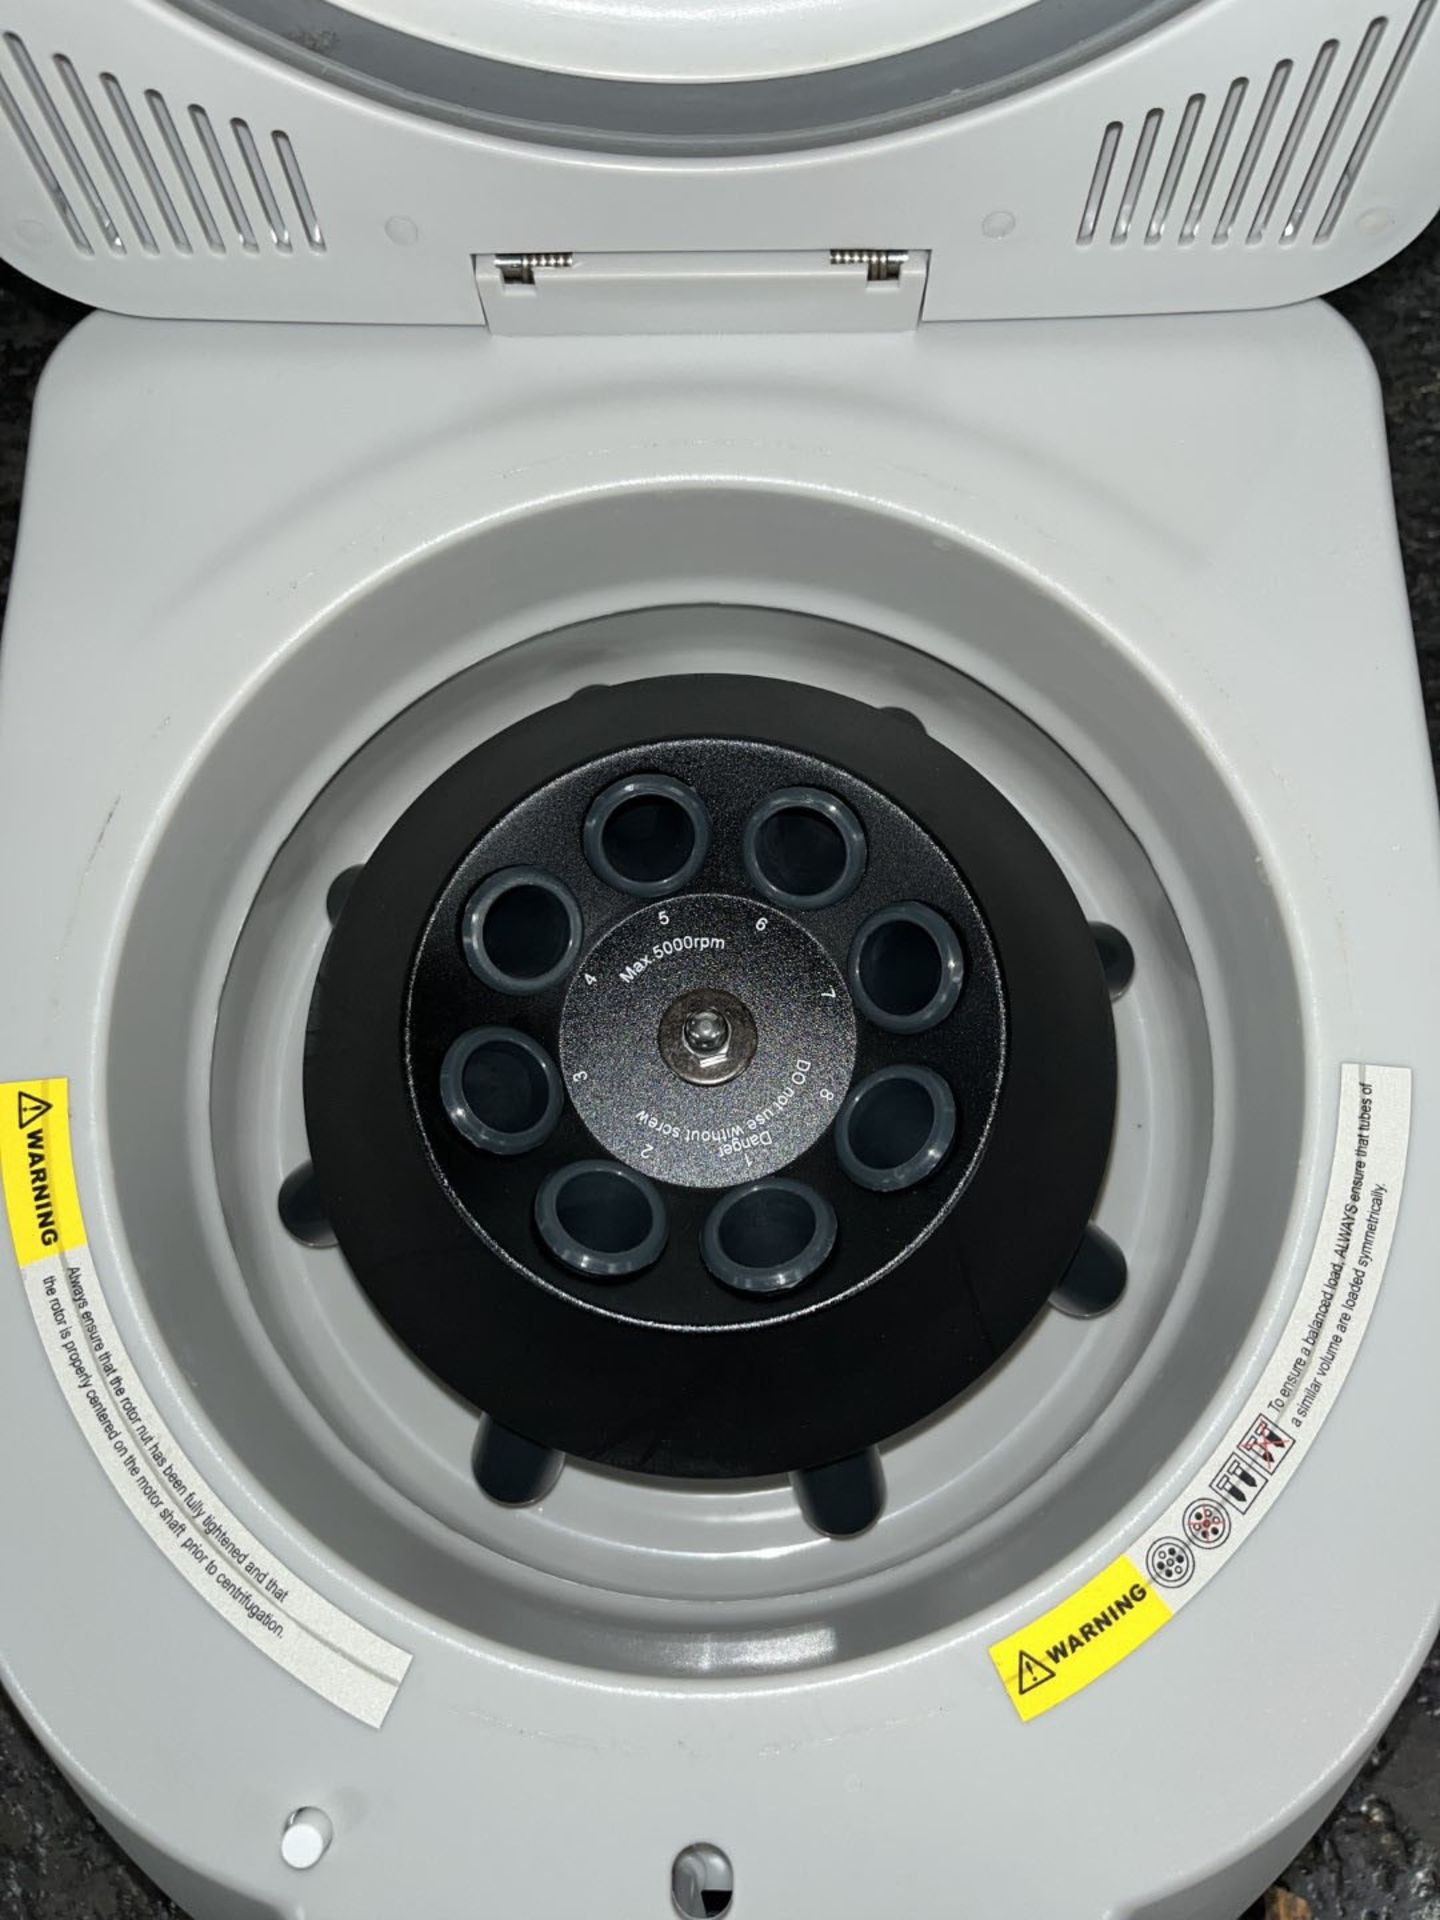 Benchmark LC-8 Centrifuge - Image 6 of 6